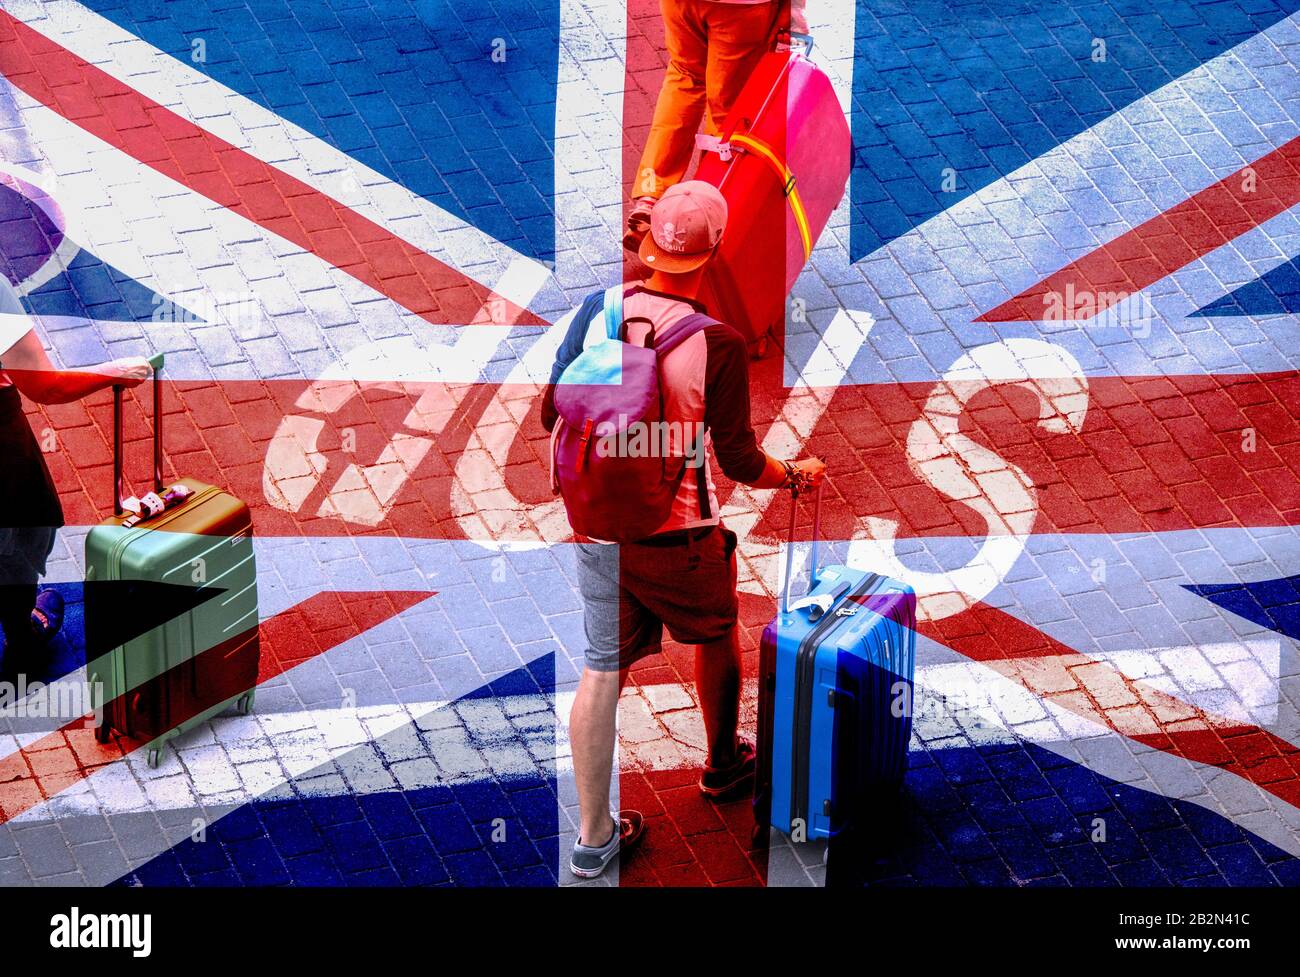 Touristen, die Gepäck über ein Stoppschild auf der Straße tragen. Britische Flagge überlagert.Coronavirus, Brexit, Reisen, Tourismus..., Konzeptbild. Stockfoto